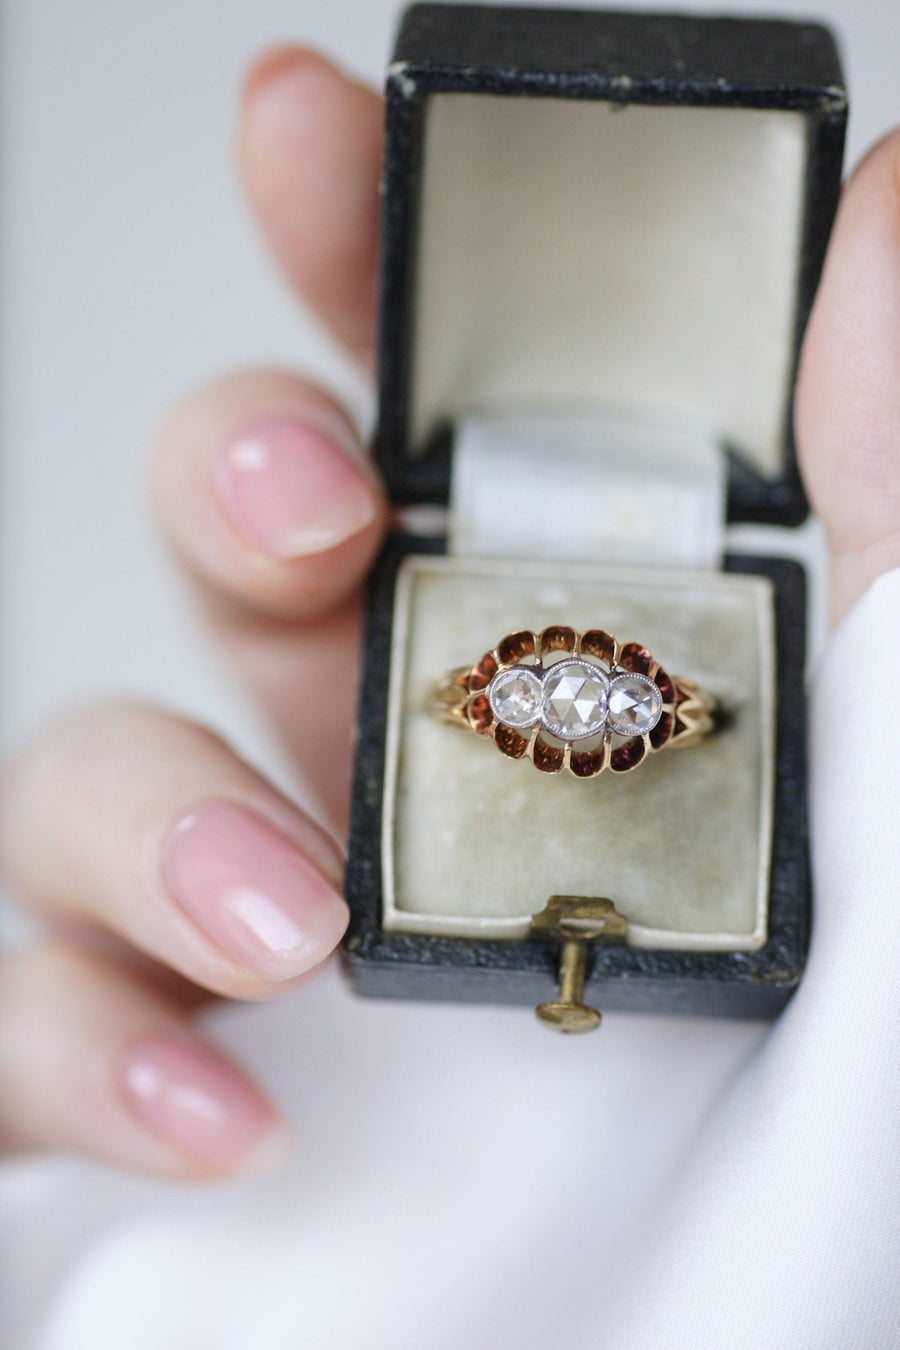 Garter ring 3 diamonds on gold - Penelope Gallery